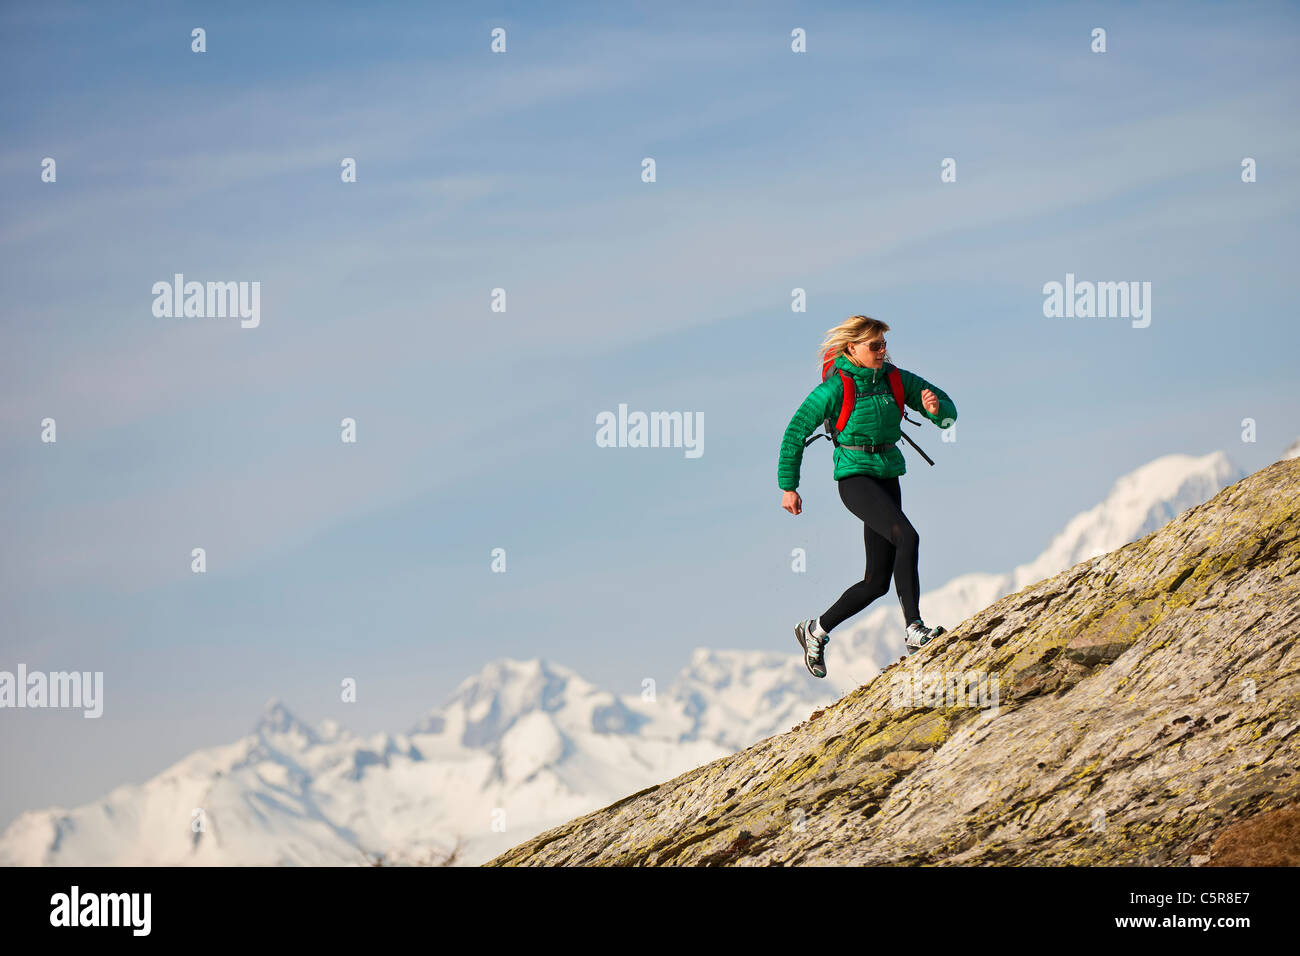 Un jogger s'exécutant sur des montagnes rocheuses. Banque D'Images